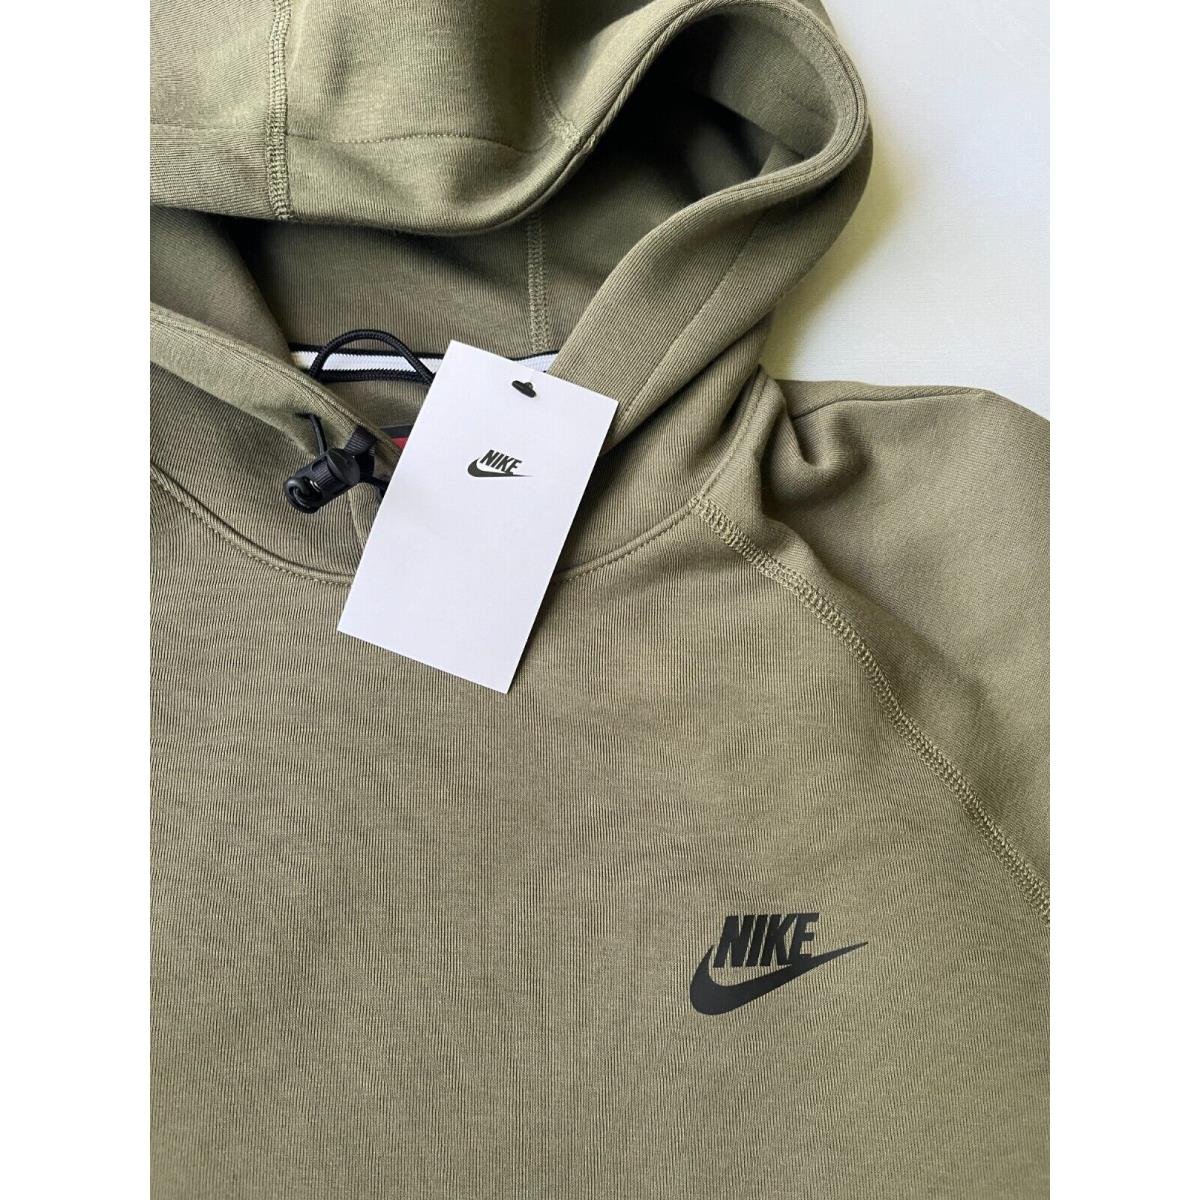 Nike Mens Sportswear Tech Fleece Hoodie Sweatshirt Olive Sz L Pullover